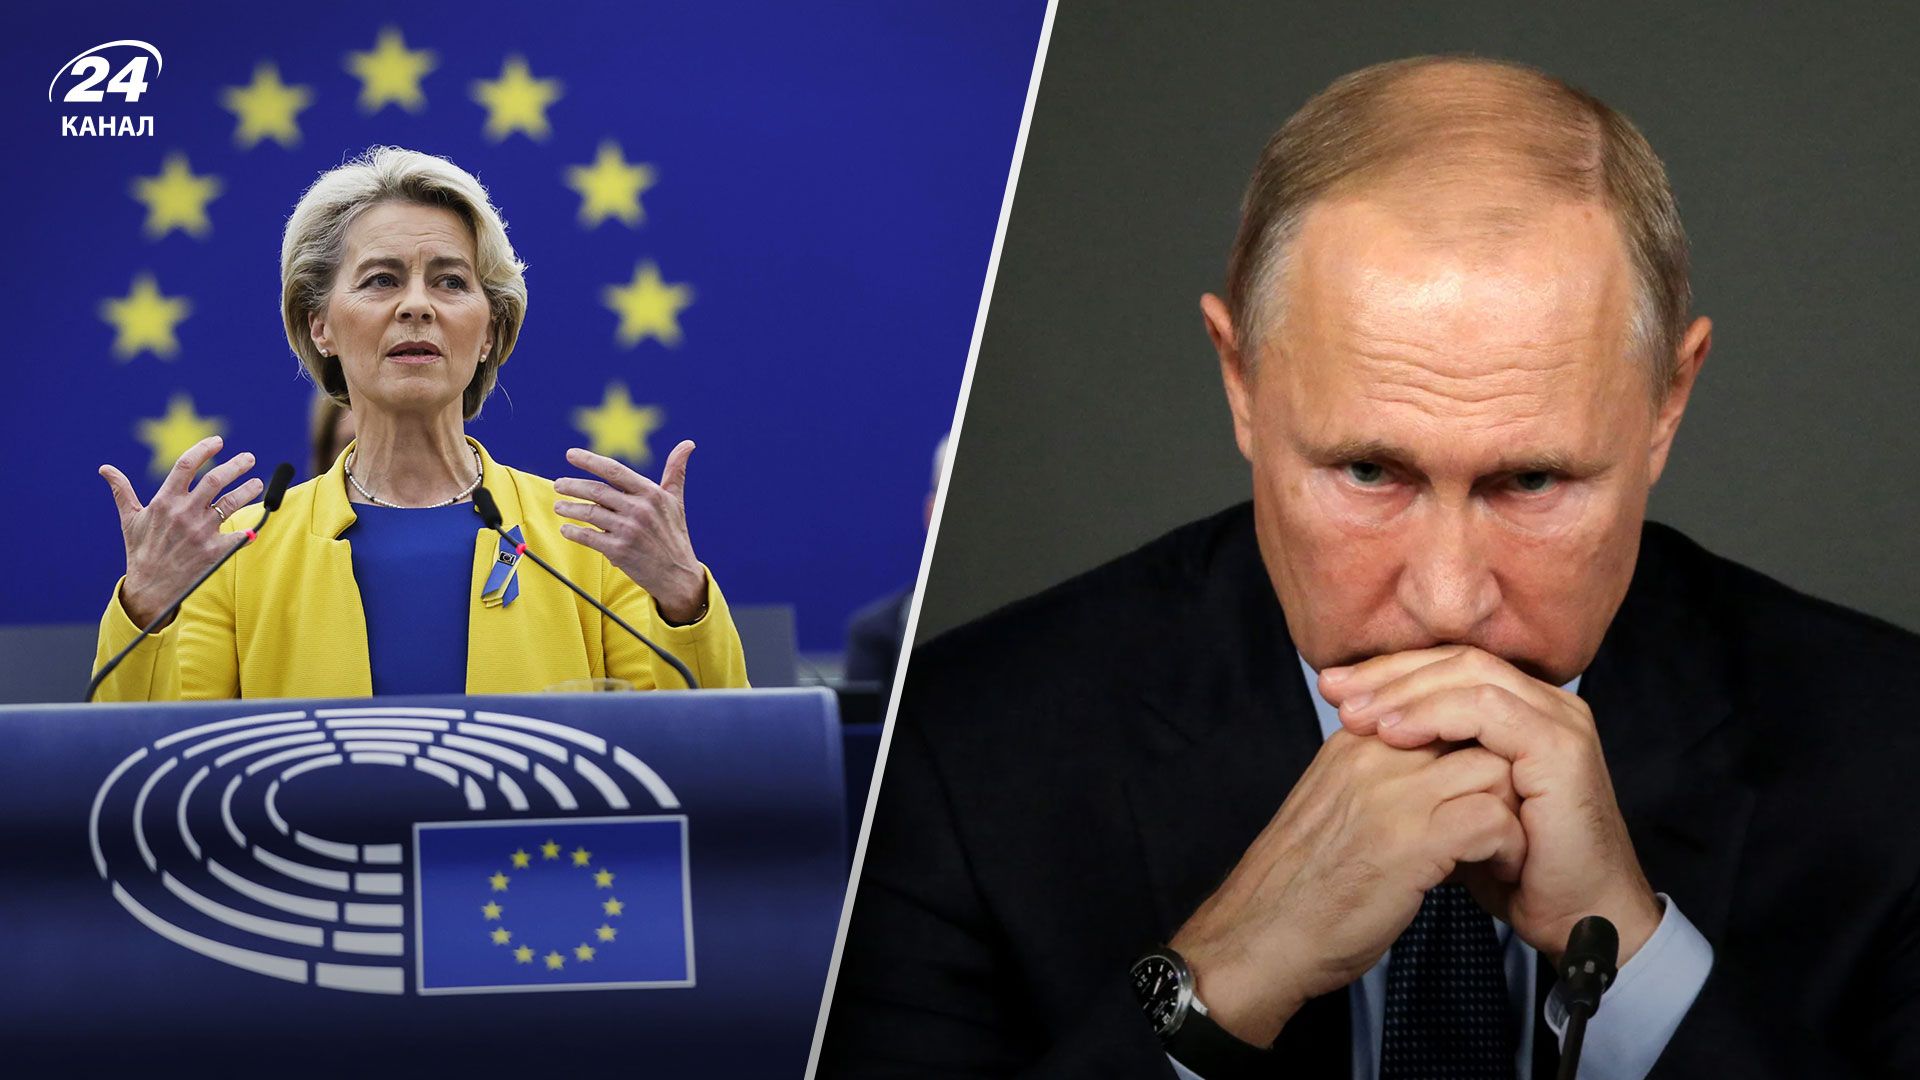 Санкции против России - Жданов рассказал о "сюрпризе" от ЕС для Путина - 24 Канал